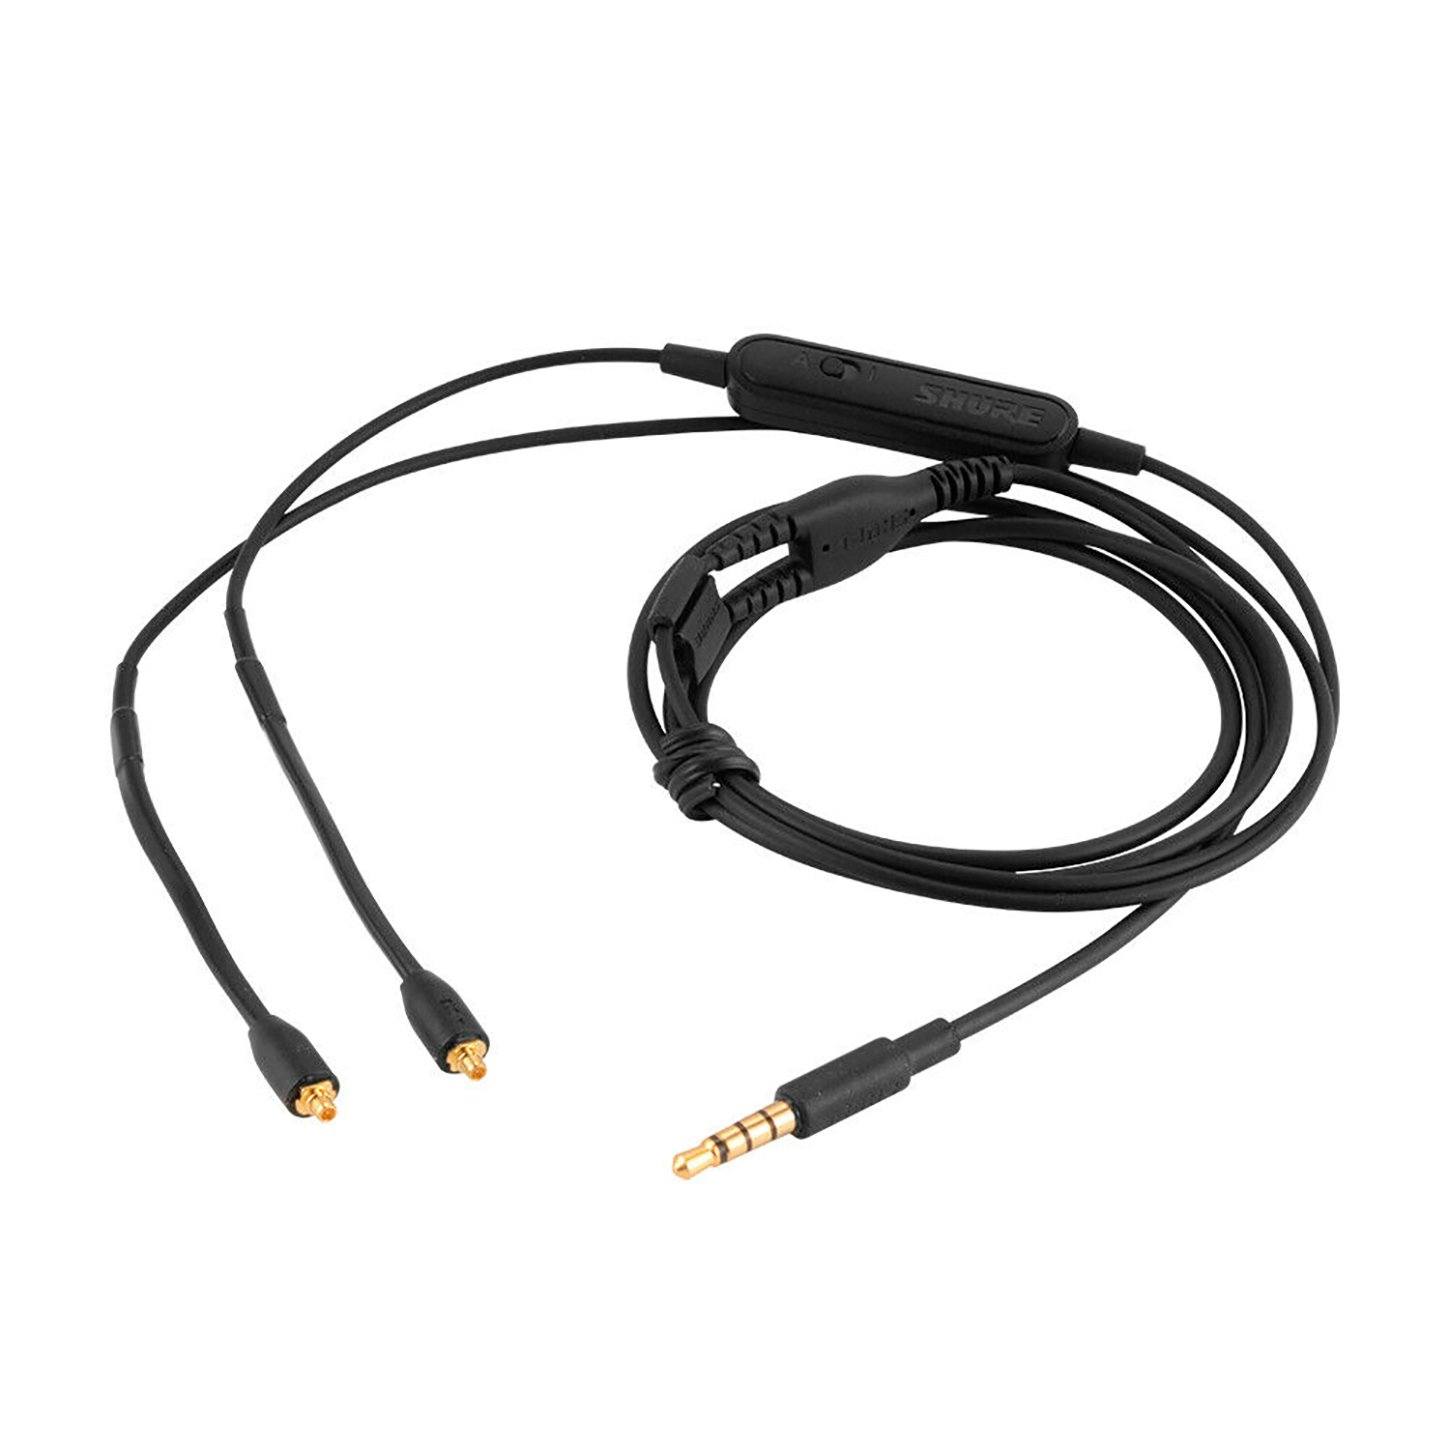 Shure RMCE UNI Cable de Micrófono y Control Remoto universal para Audífonos SE SHURE